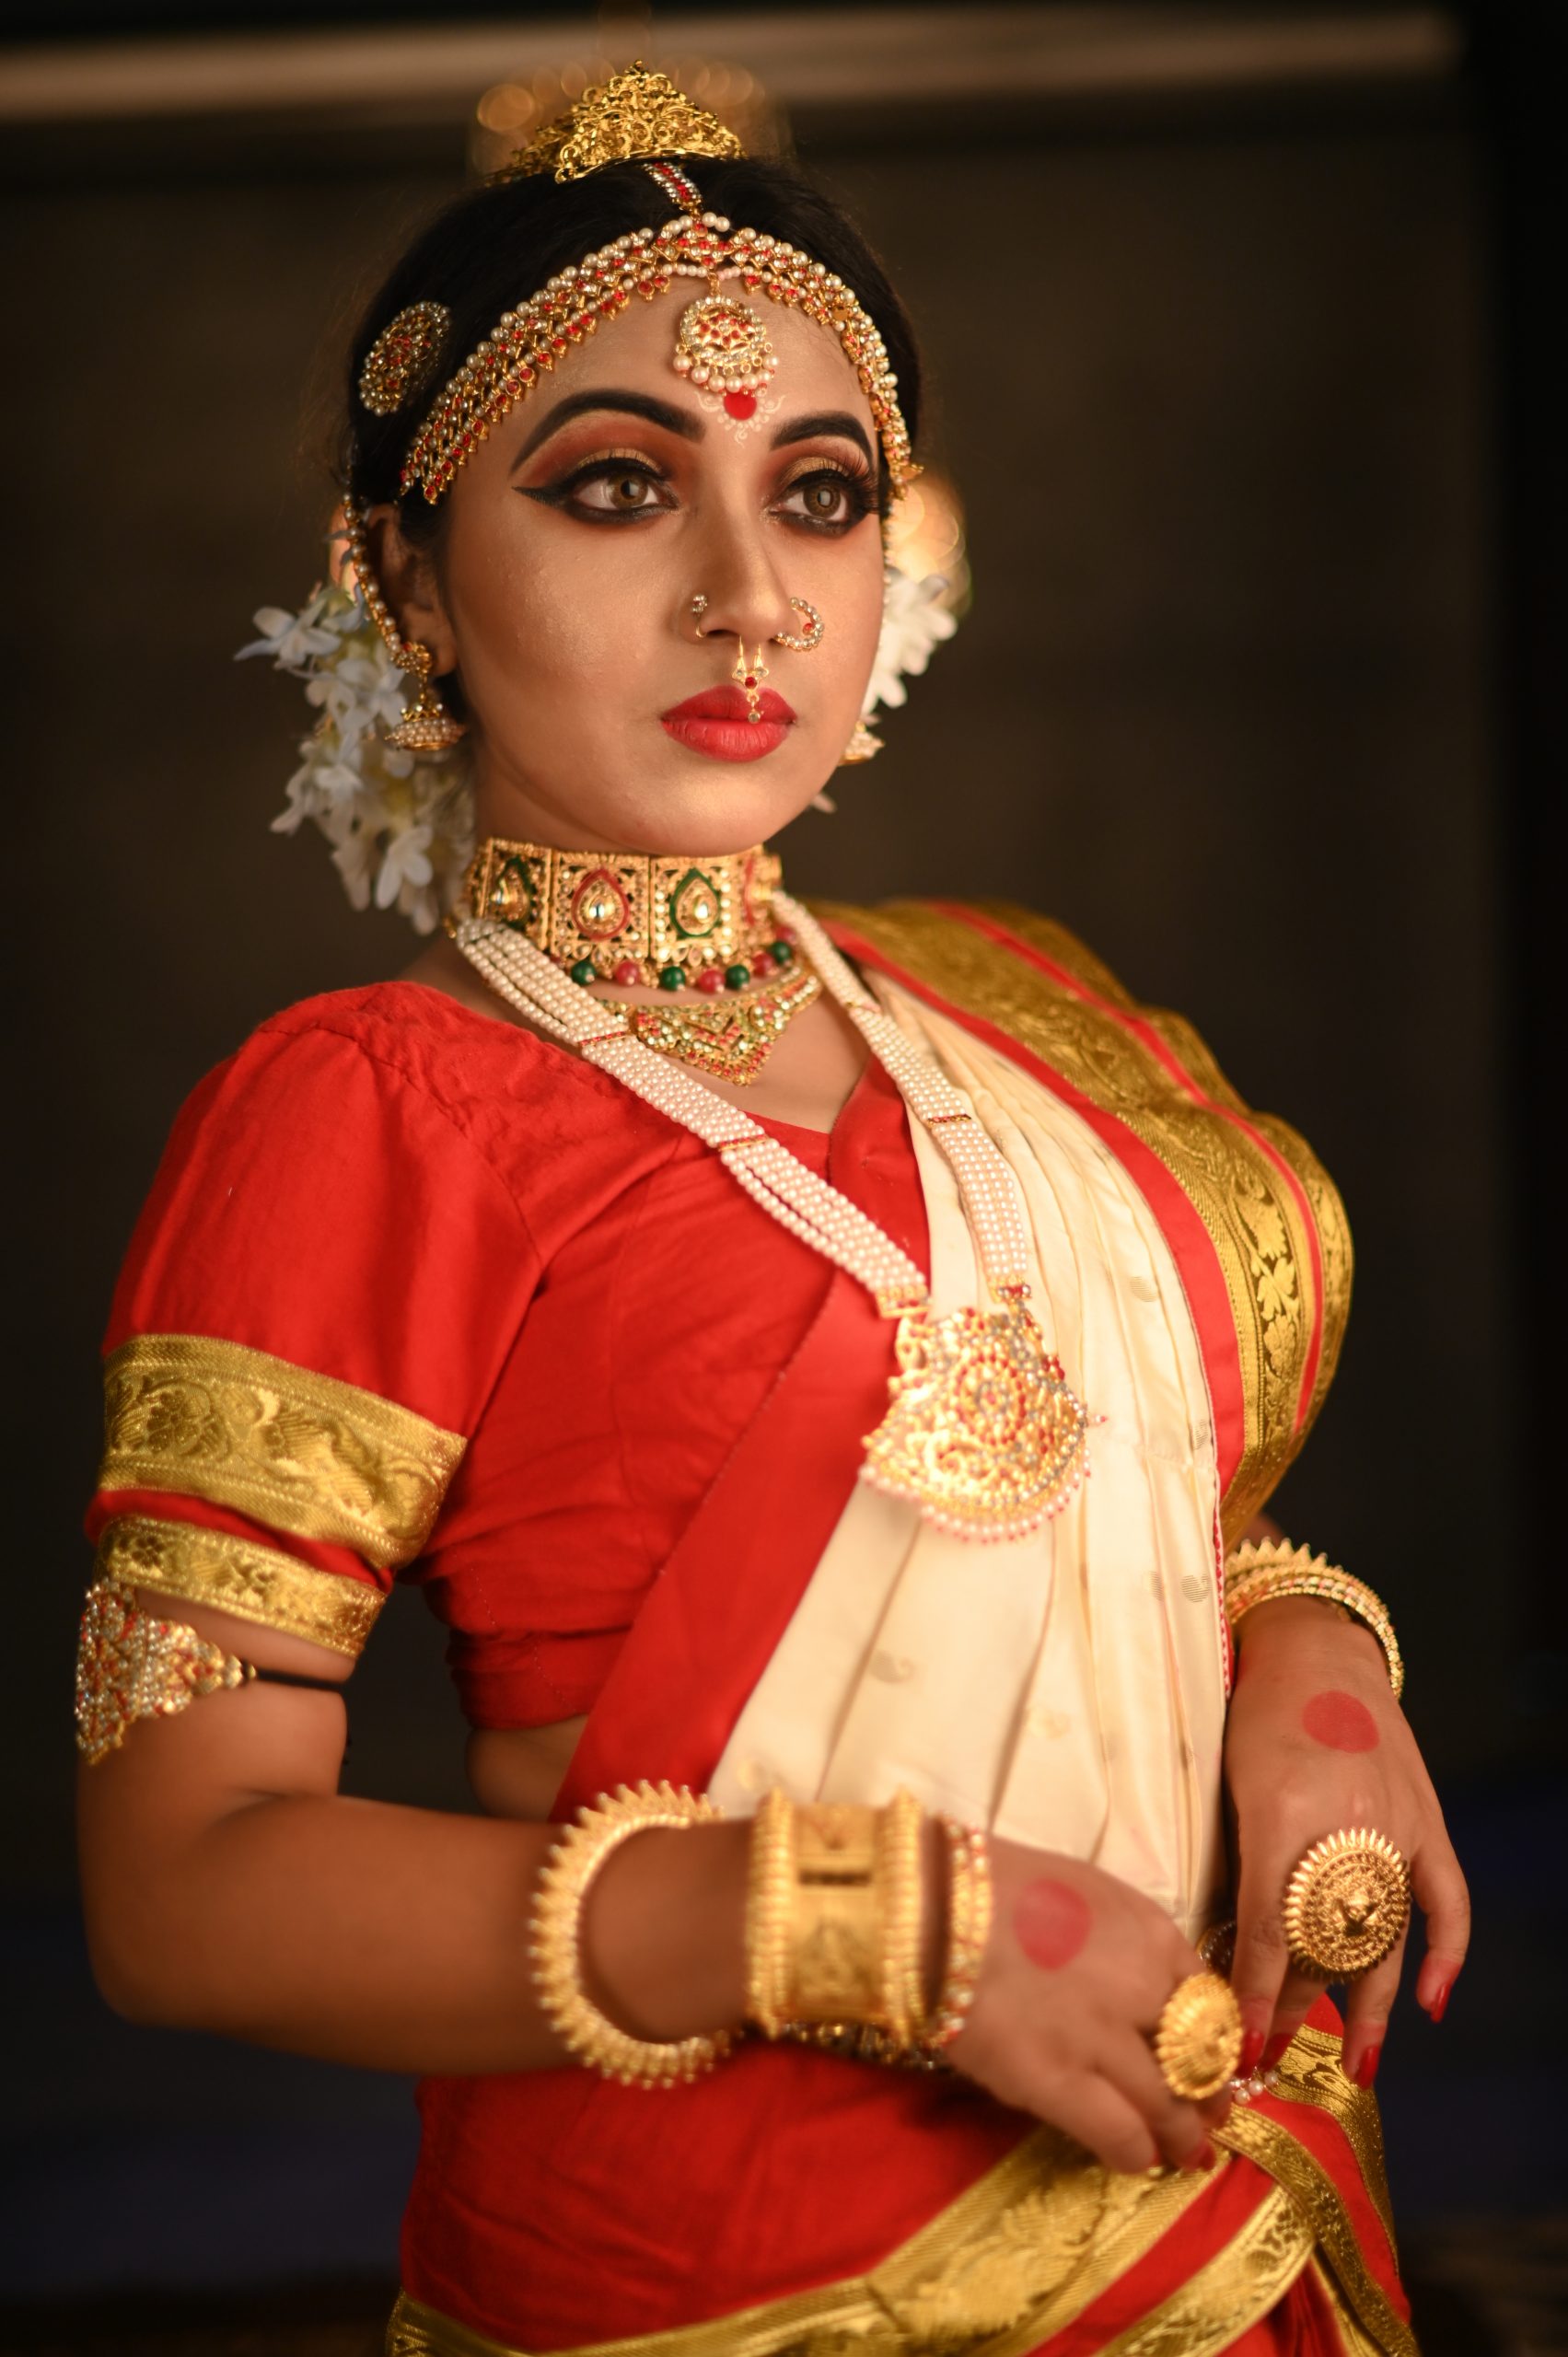 Indian stylish woman